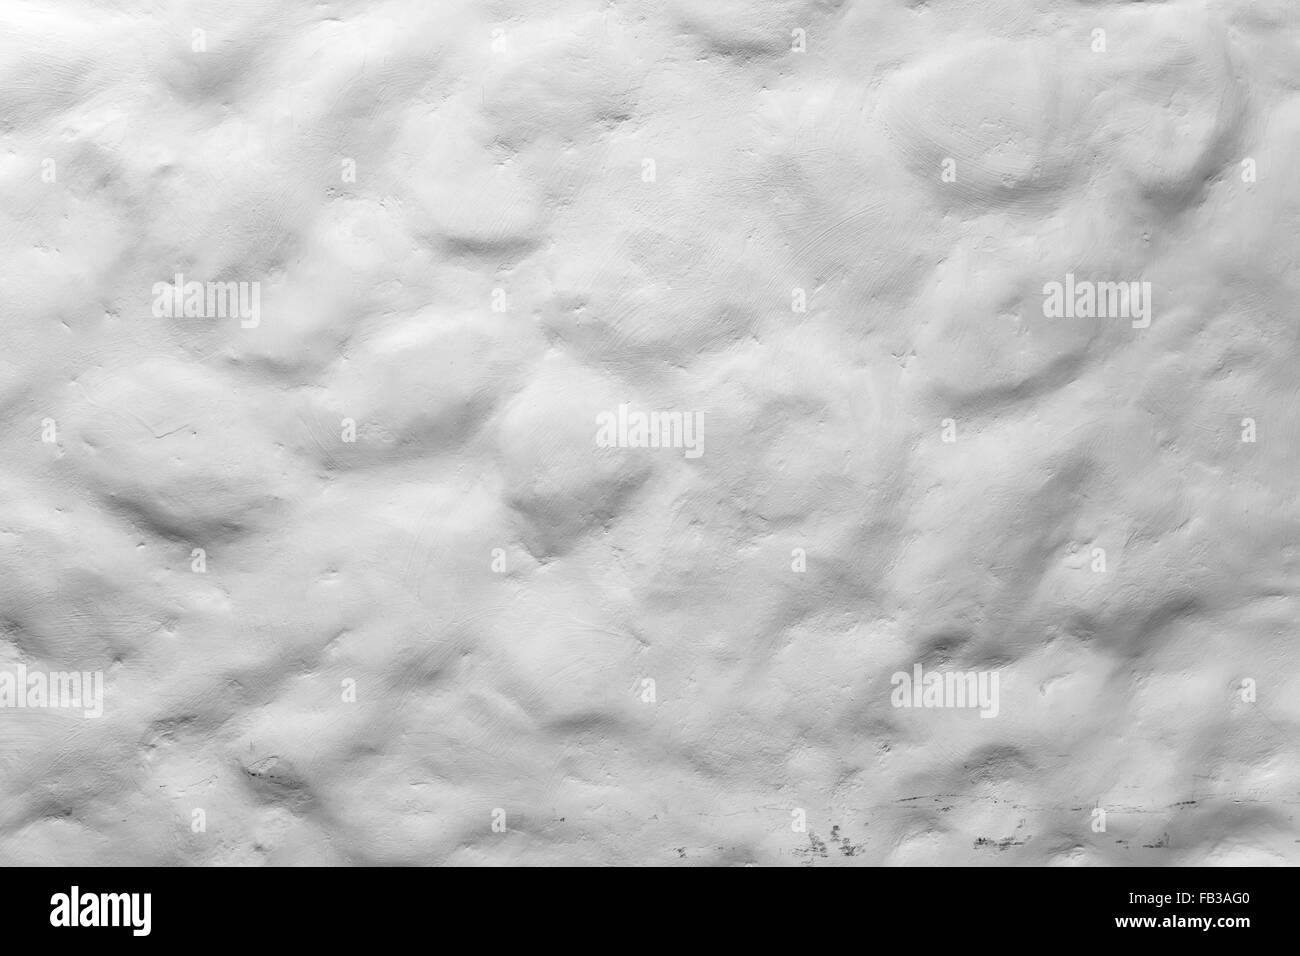 Raue ungleichmäßige weiss lackiert Steinmauer, Closeup Hintergrundtextur Foto Stockfoto